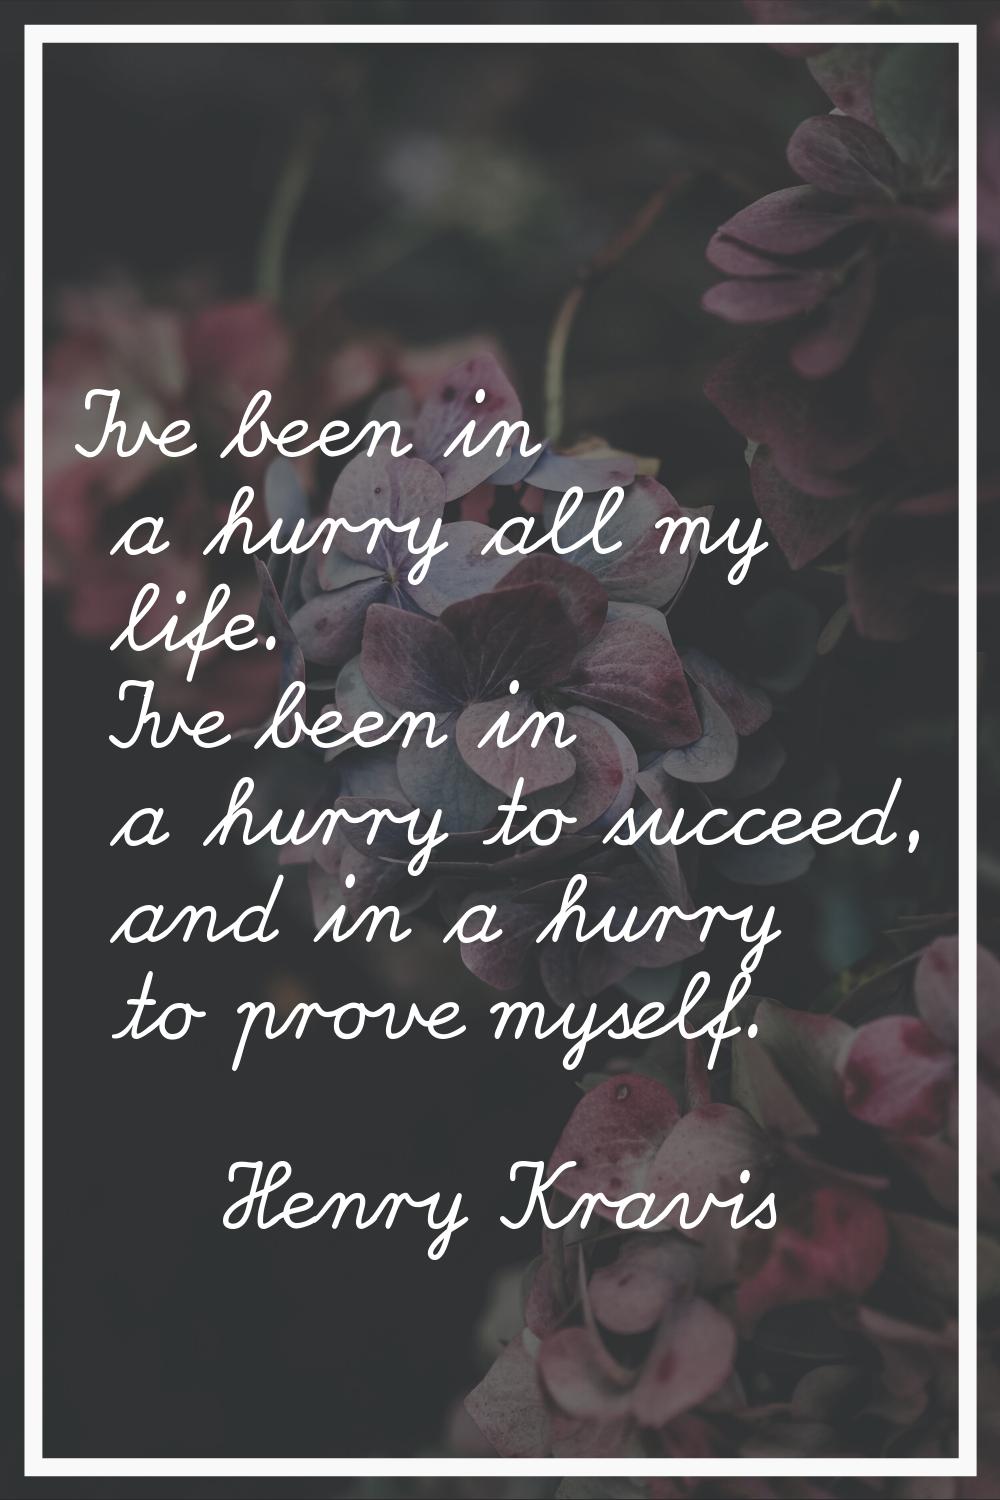 I've been in a hurry all my life. I've been in a hurry to succeed, and in a hurry to prove myself.